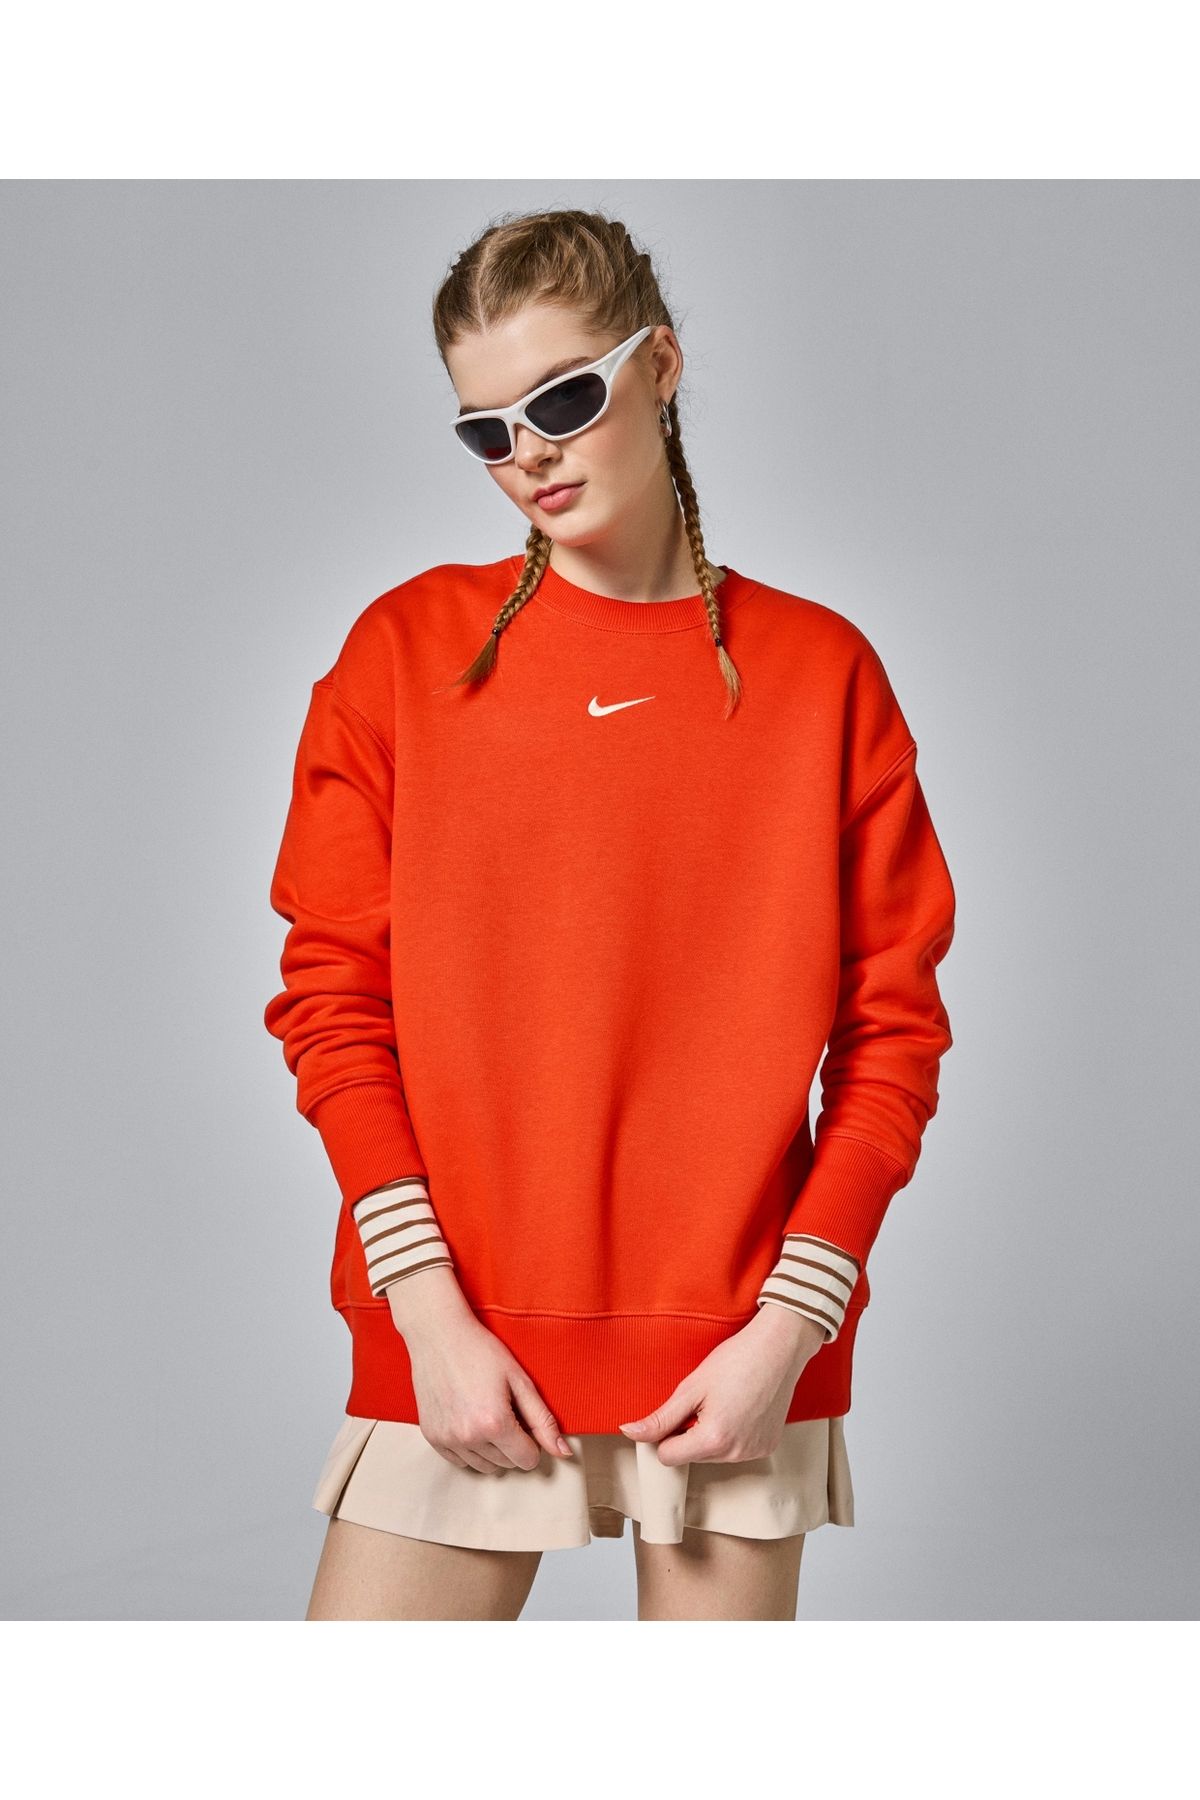 Nike Sportswear Collection Essentials Kadın Yünlü Sweatshirt